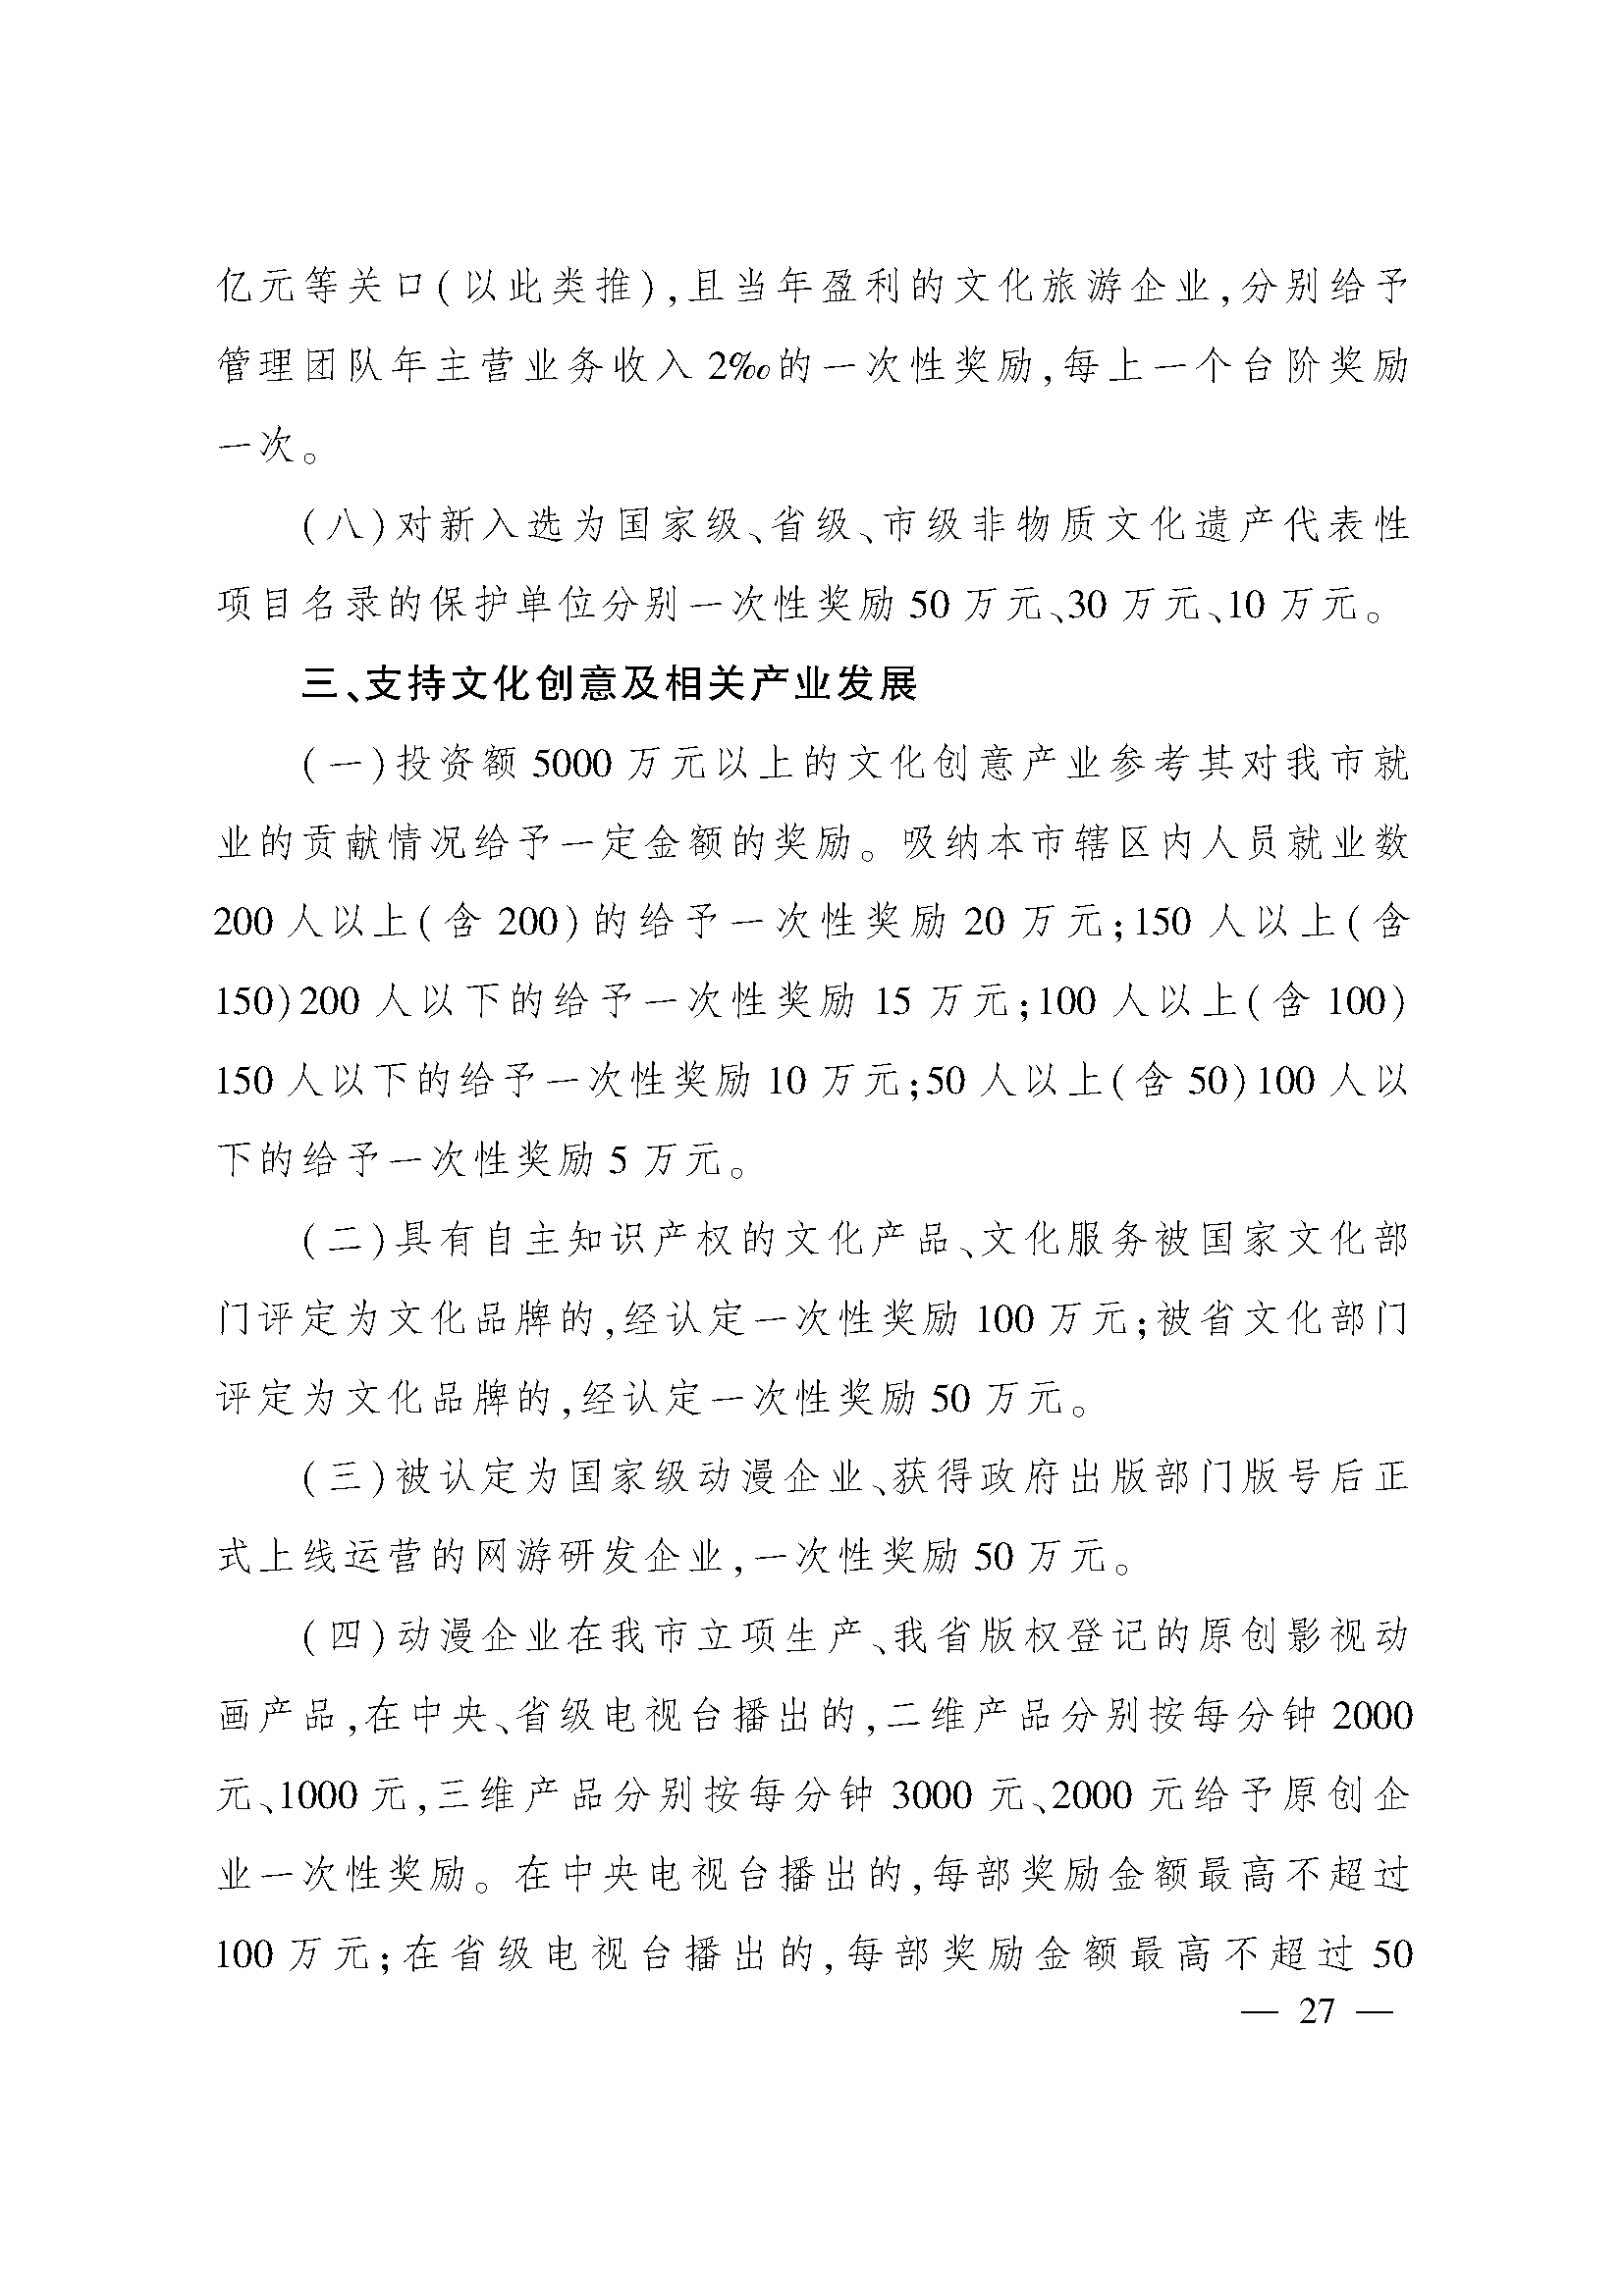 太原市人民政府办公室关于印发太原市招商引资若干措施的通知(图27)